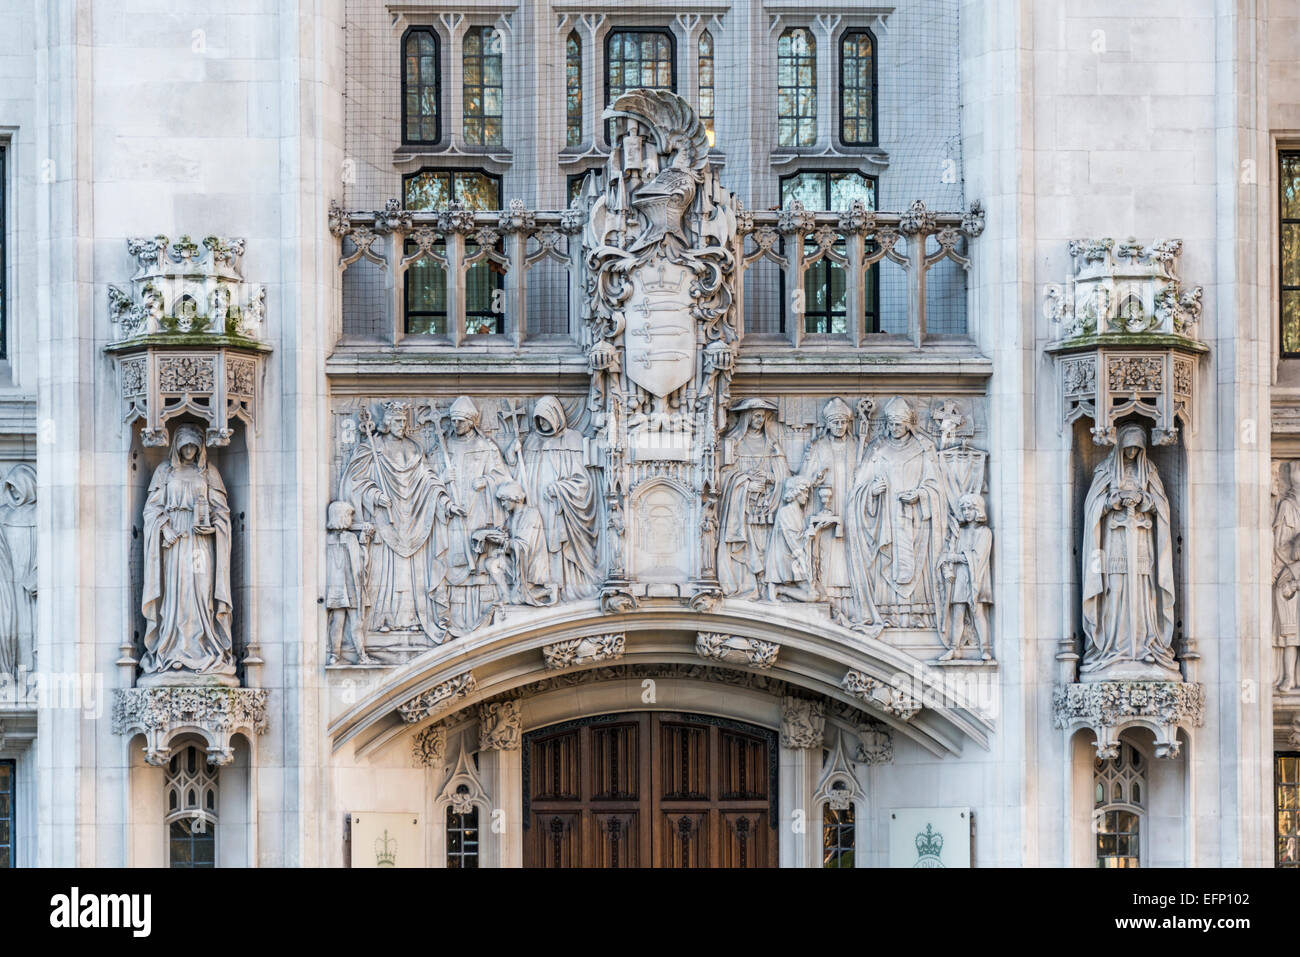 La Middlesex Guildhall è la sede della Corte suprema del Regno Unito e la Commissione giudiziaria del Consiglio Privy Foto Stock